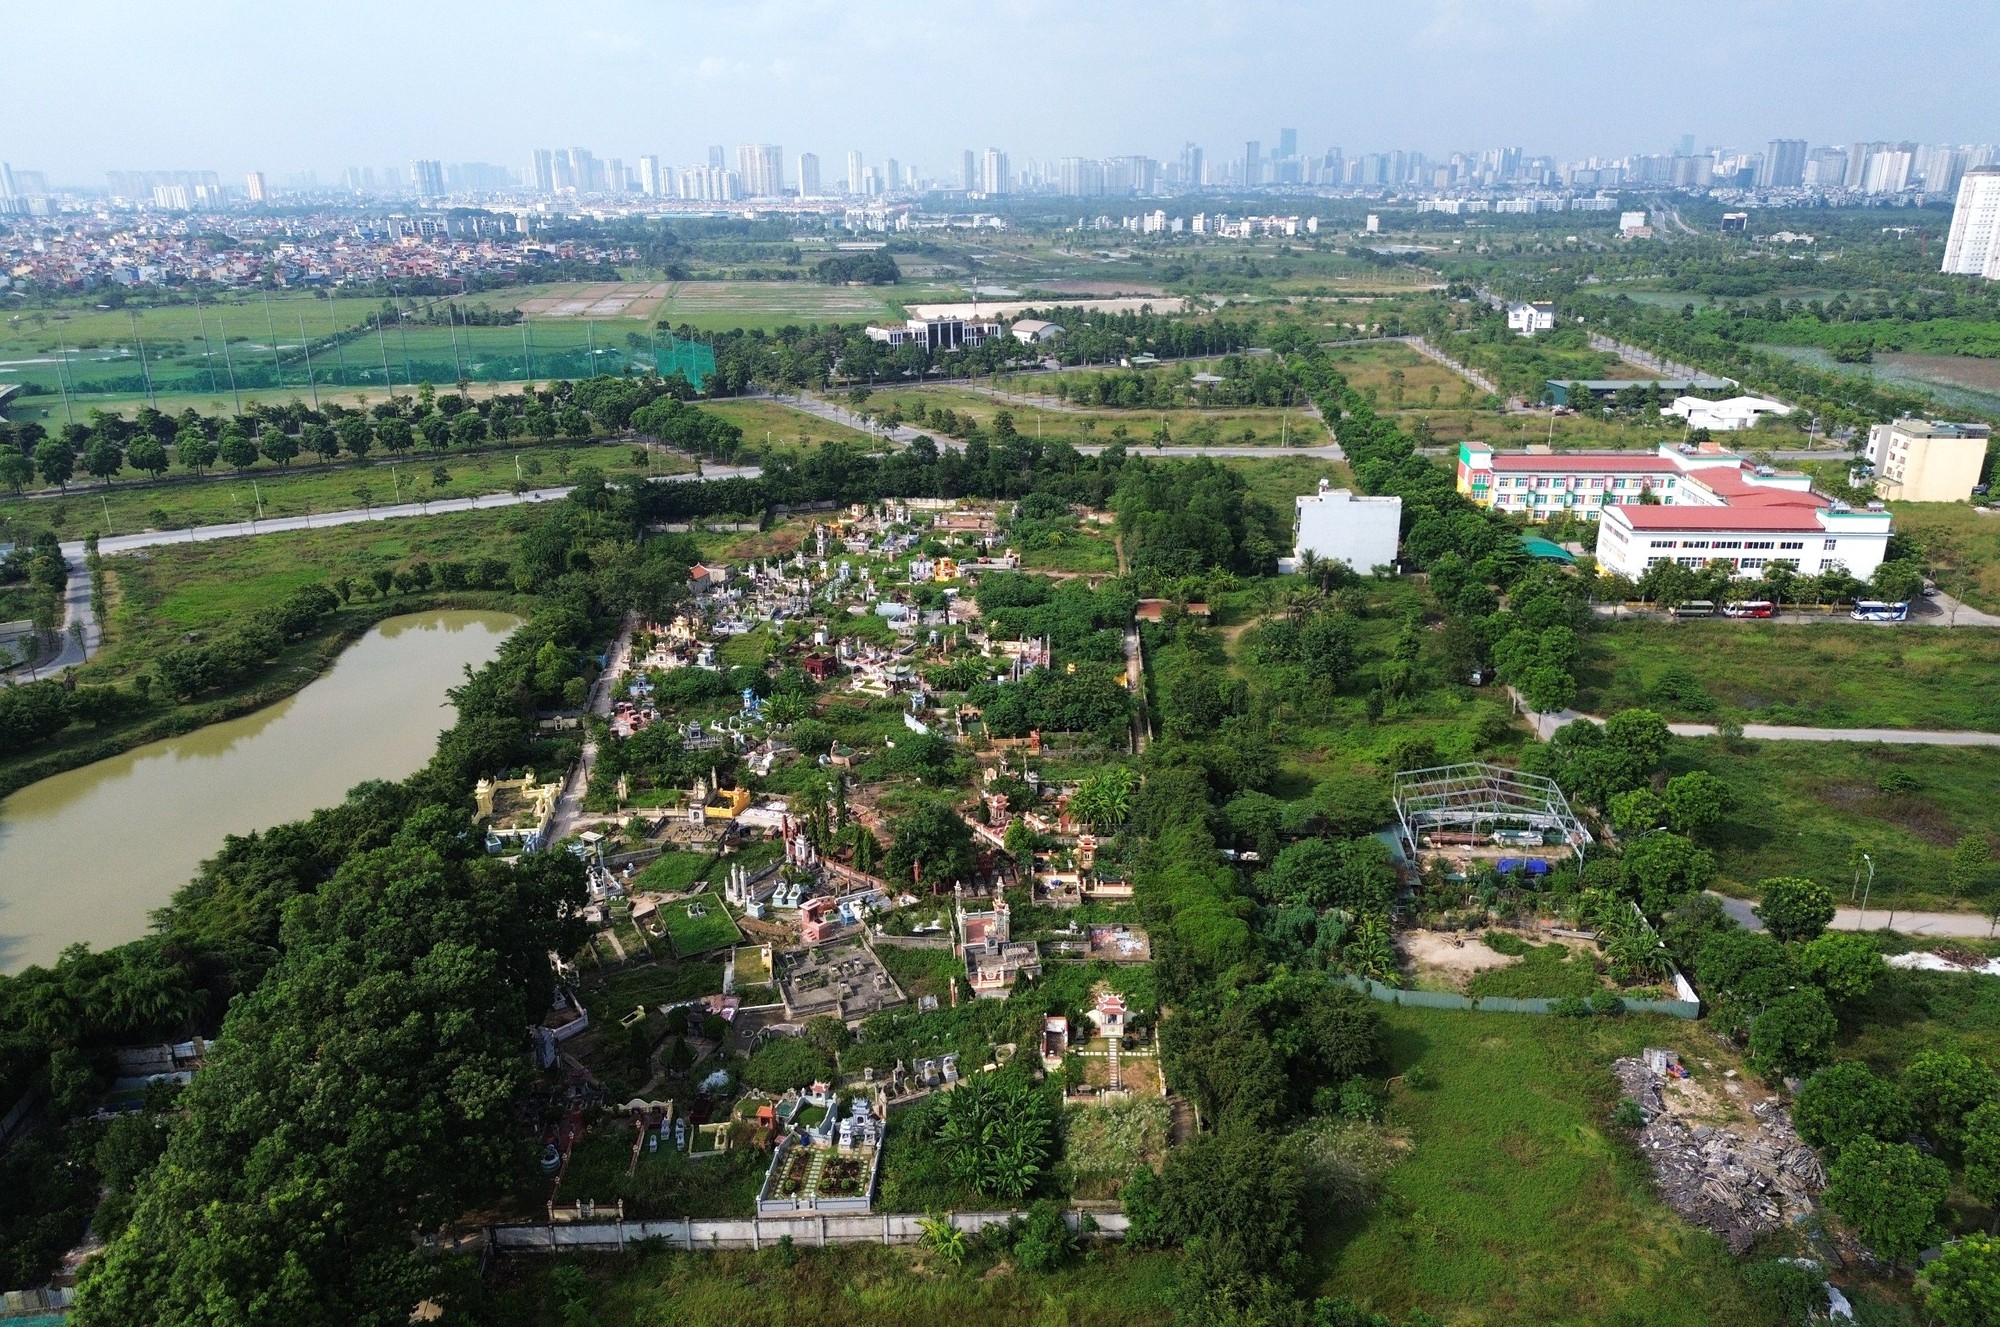 Trạm cấp nước bị cư dân Thanh Hà phản đối vì ô nhiễm, gần nghĩa trang - Ảnh 8.